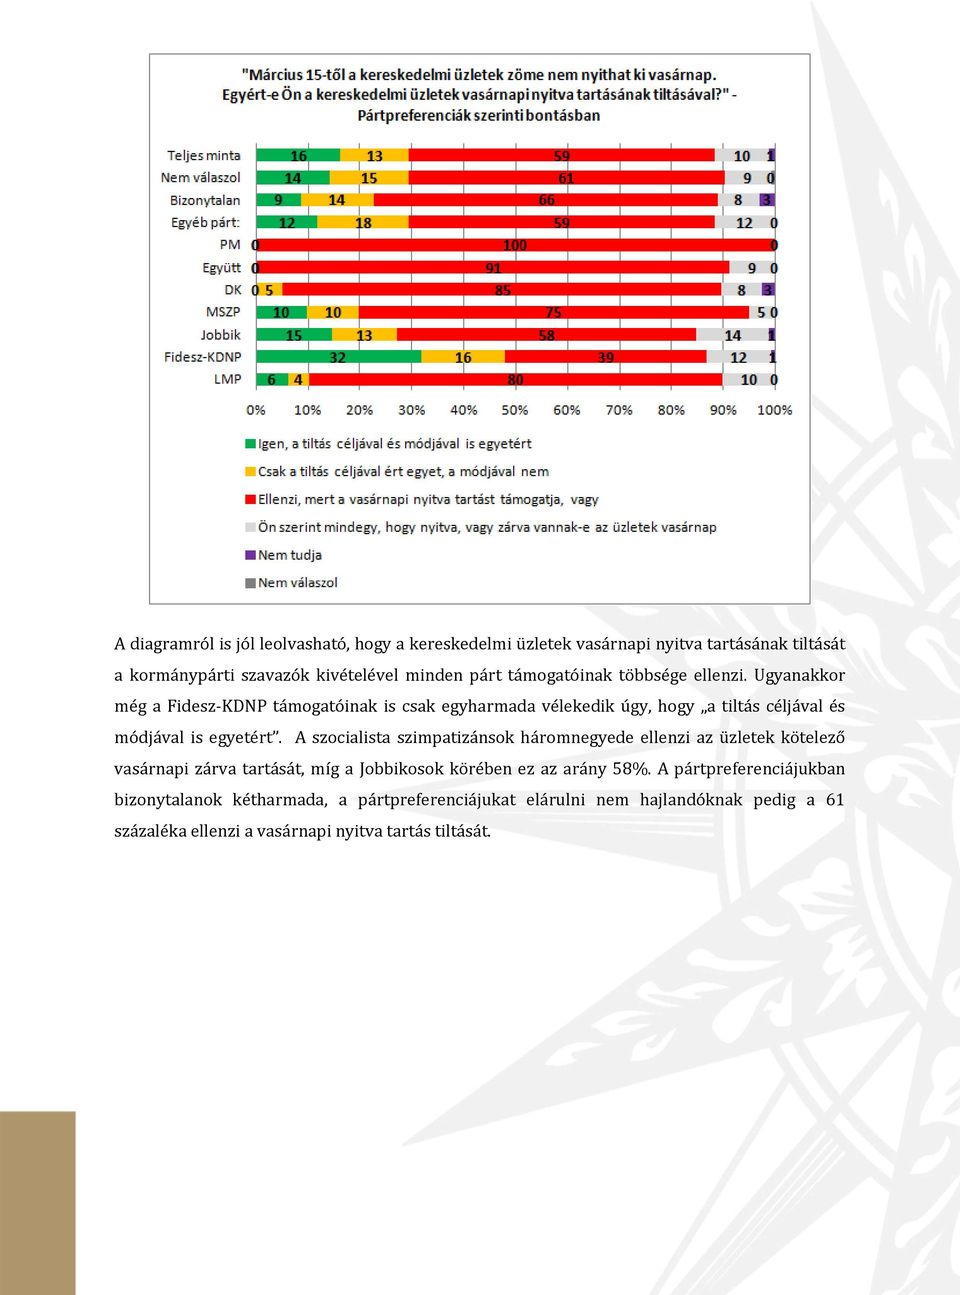 Ugyanakkor még a Fidesz-KDNP támogatóinak is csak egyharmada vélekedik úgy, hogy a tiltás céljával és módjával is egyetért.